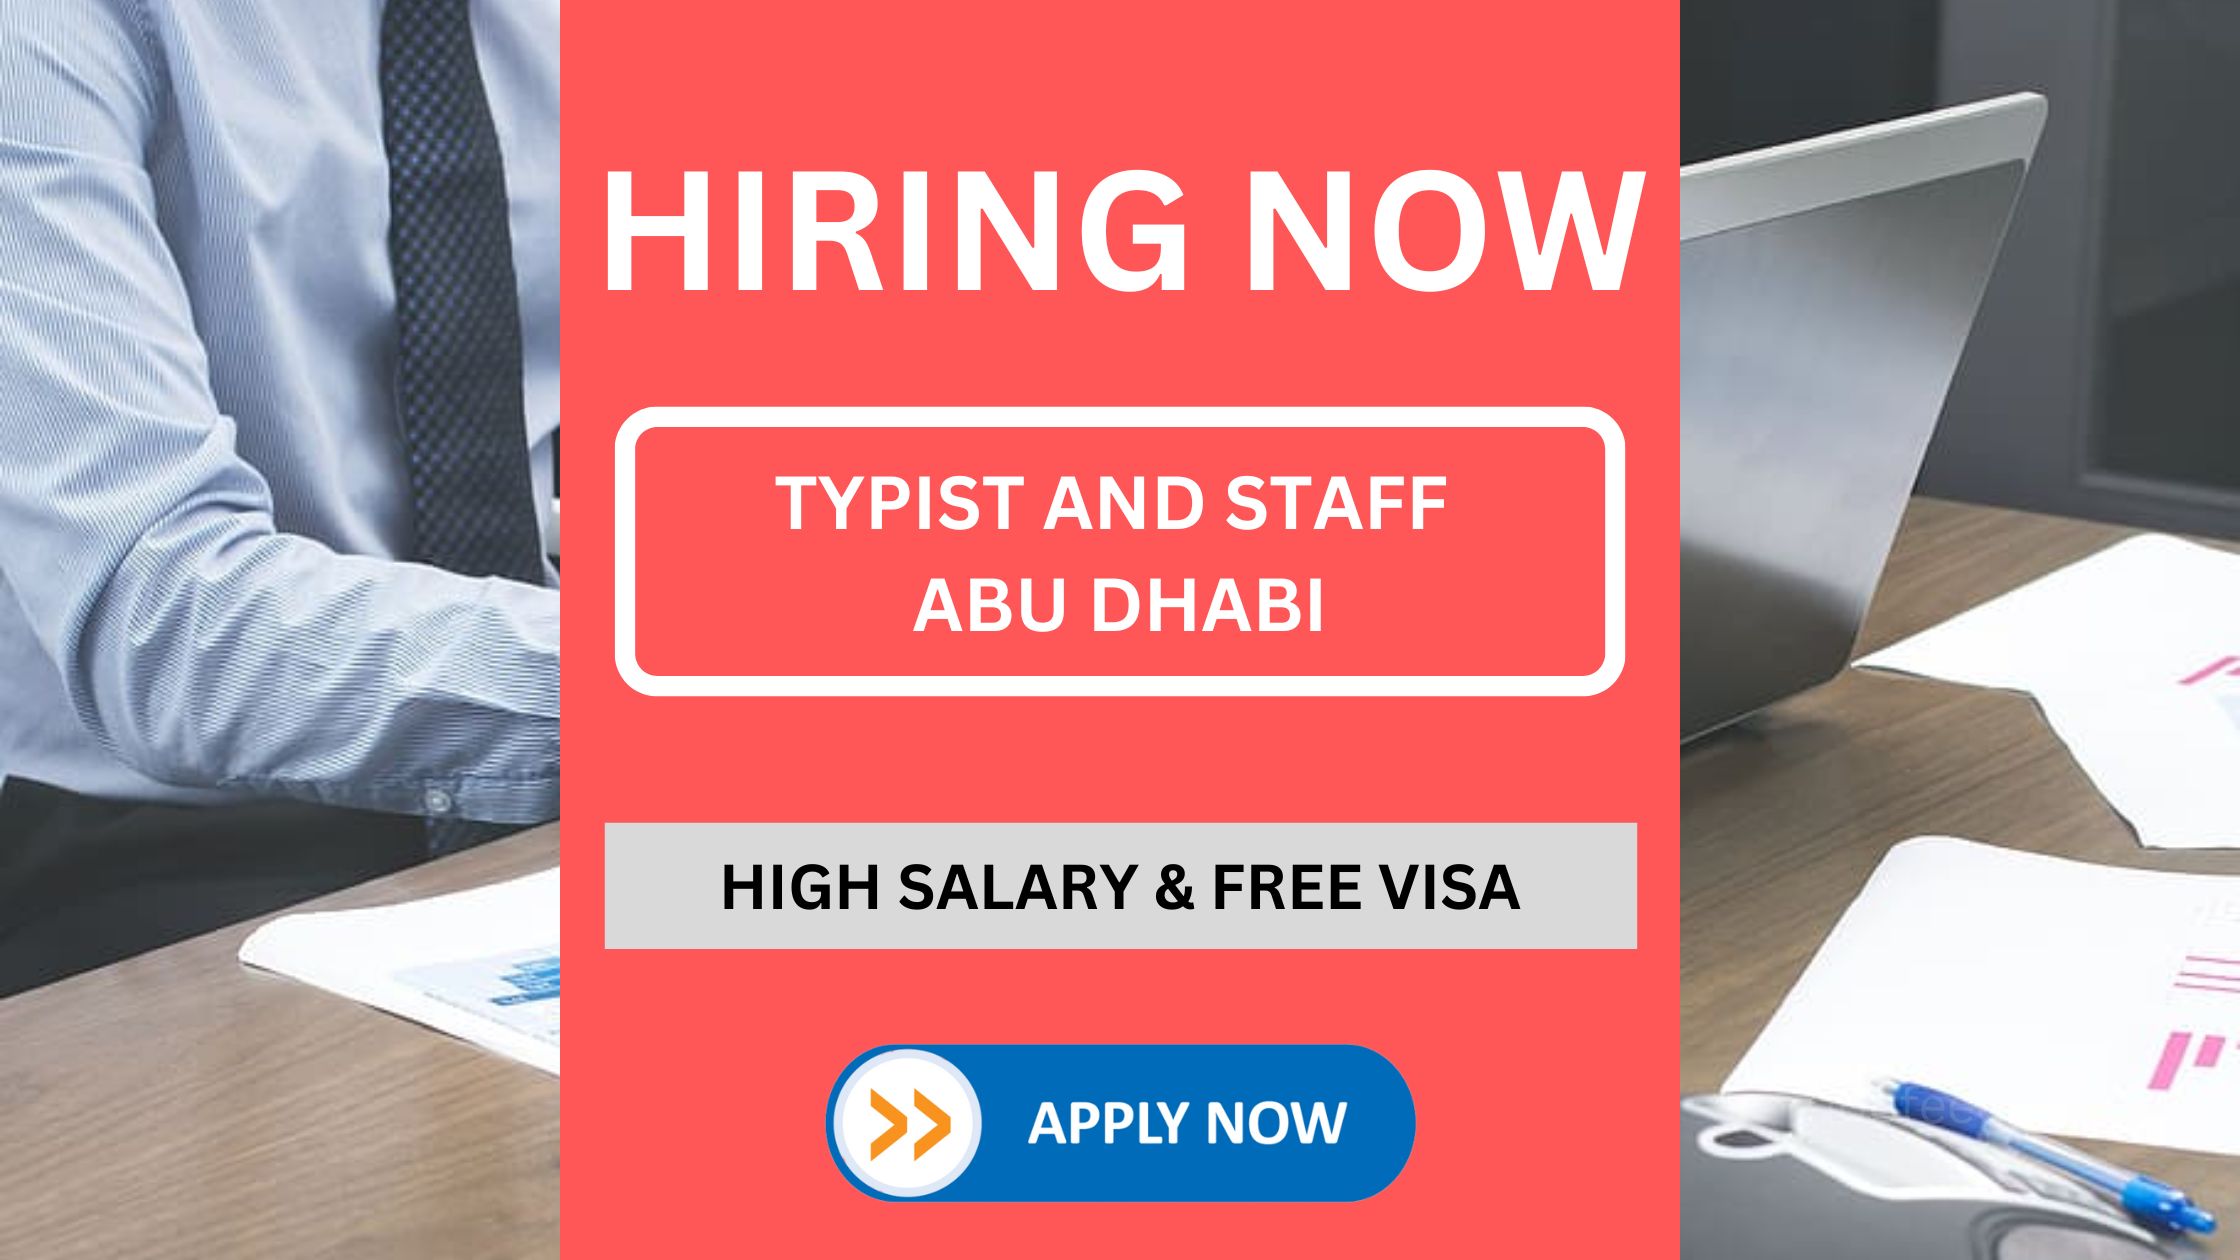 ابوظہبی کی اقتصادی ملازمتوں کے لیے سفر کے 2 سال کے تجربے کے ساتھ فوری طور پر ٹائپسٹ اور اسٹاف کی خدمات حاصل کرنا